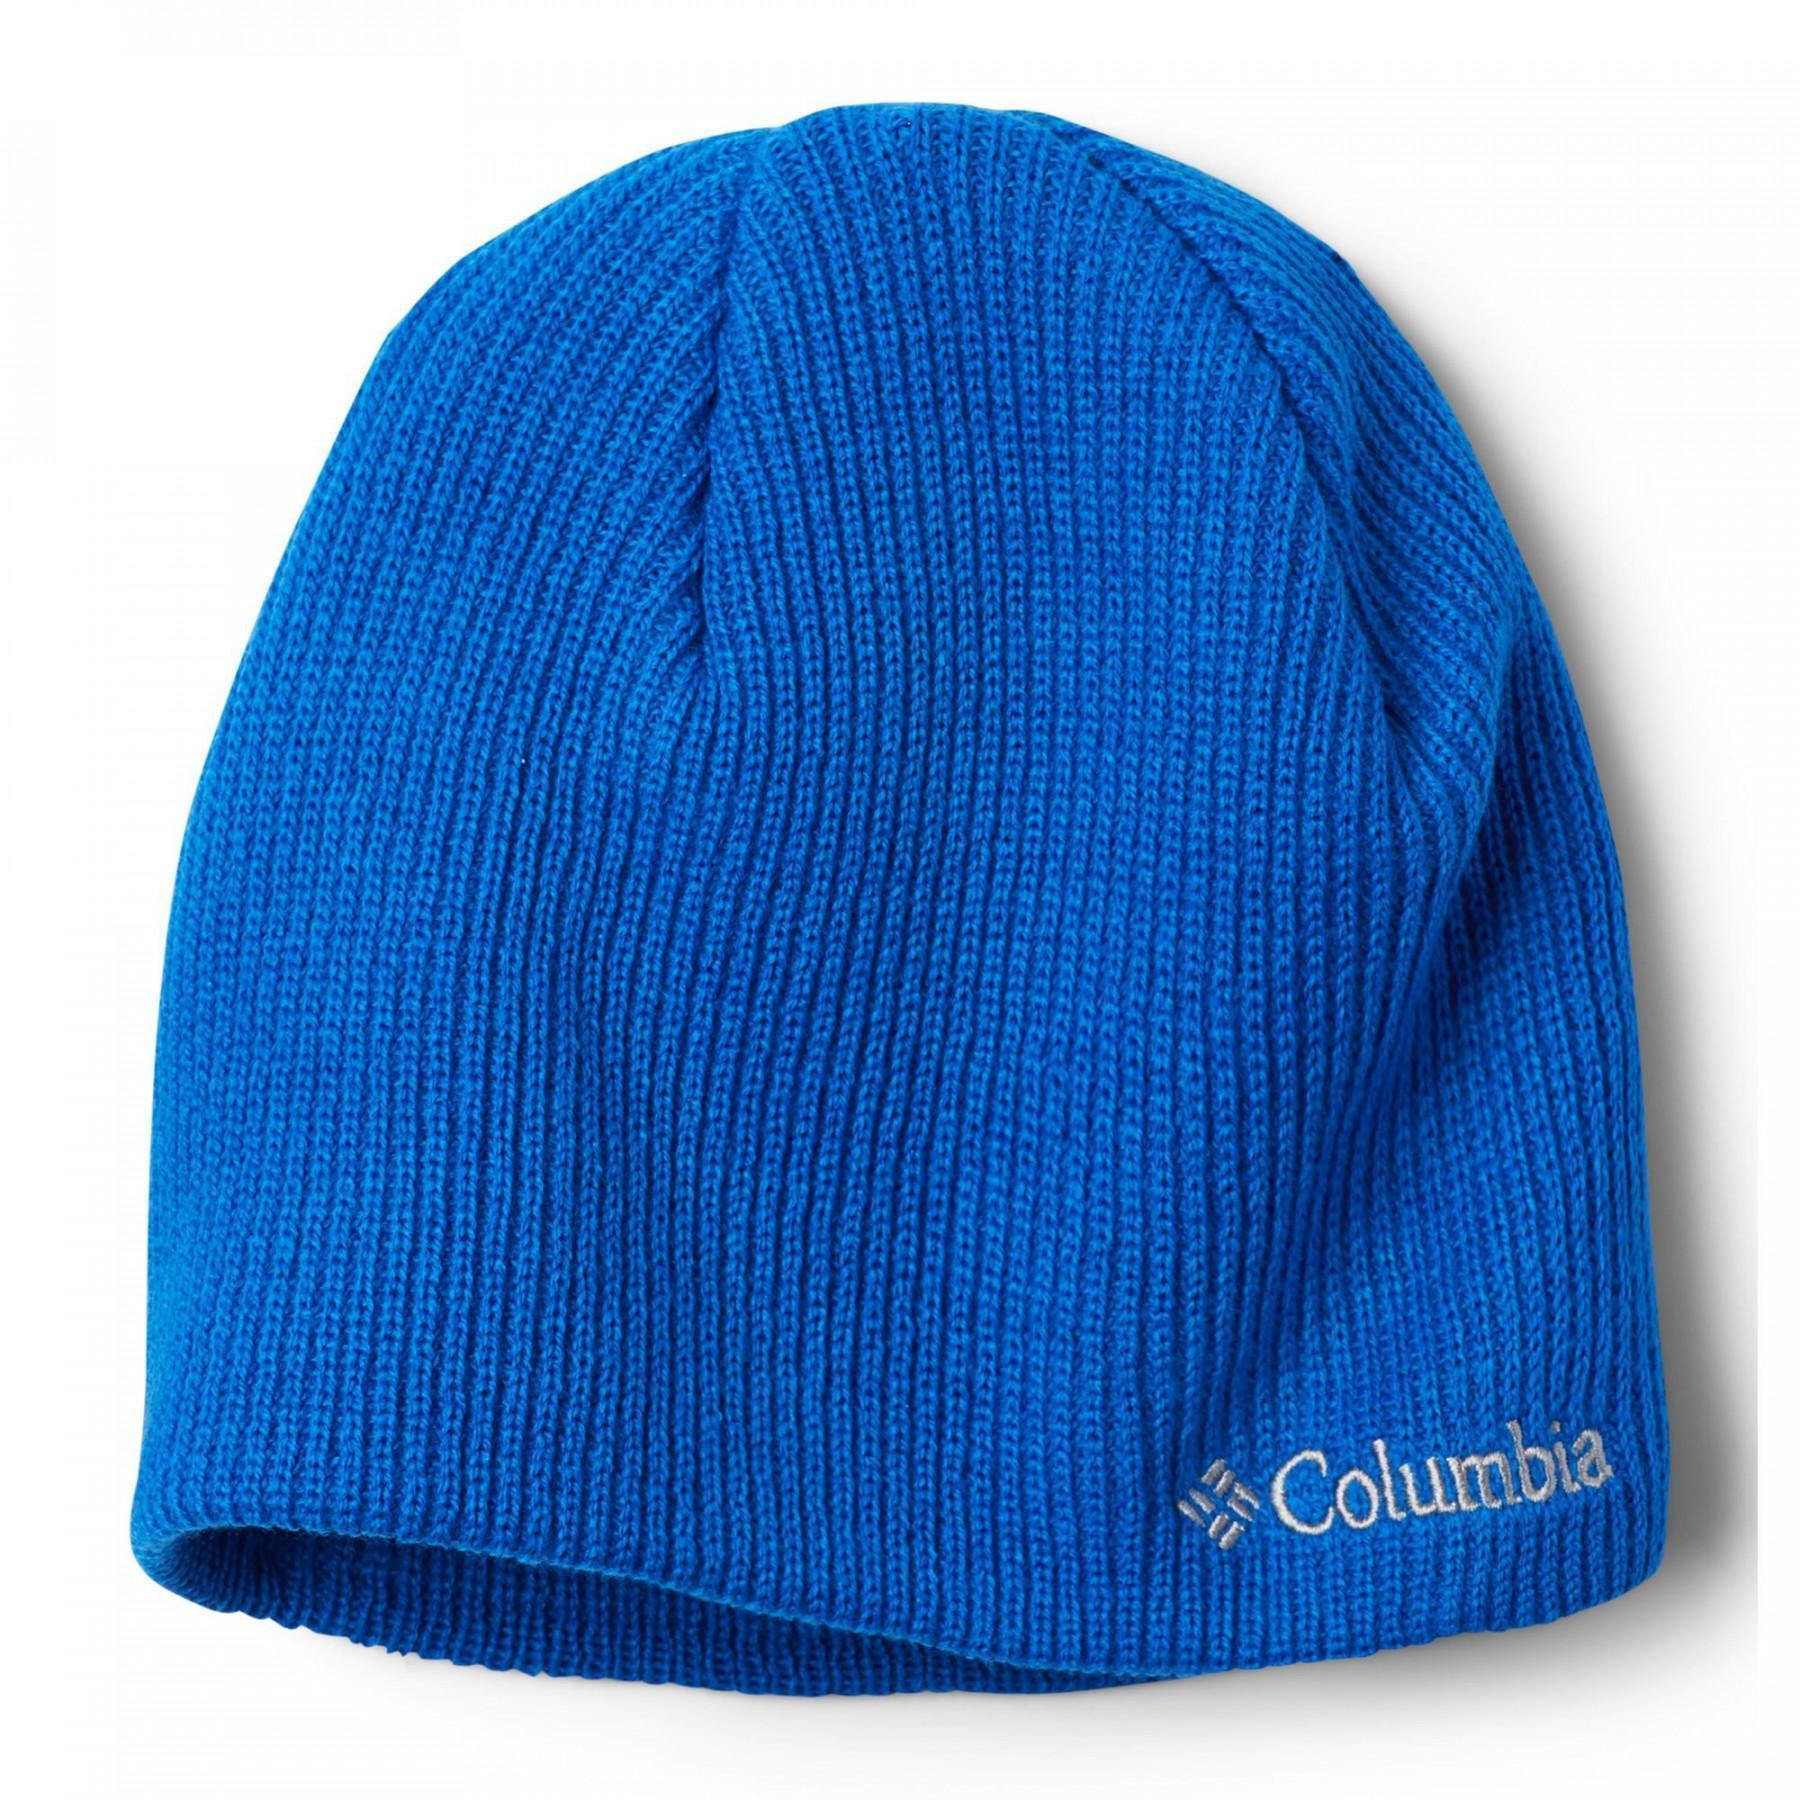 Children's hat Columbia Whirlibird